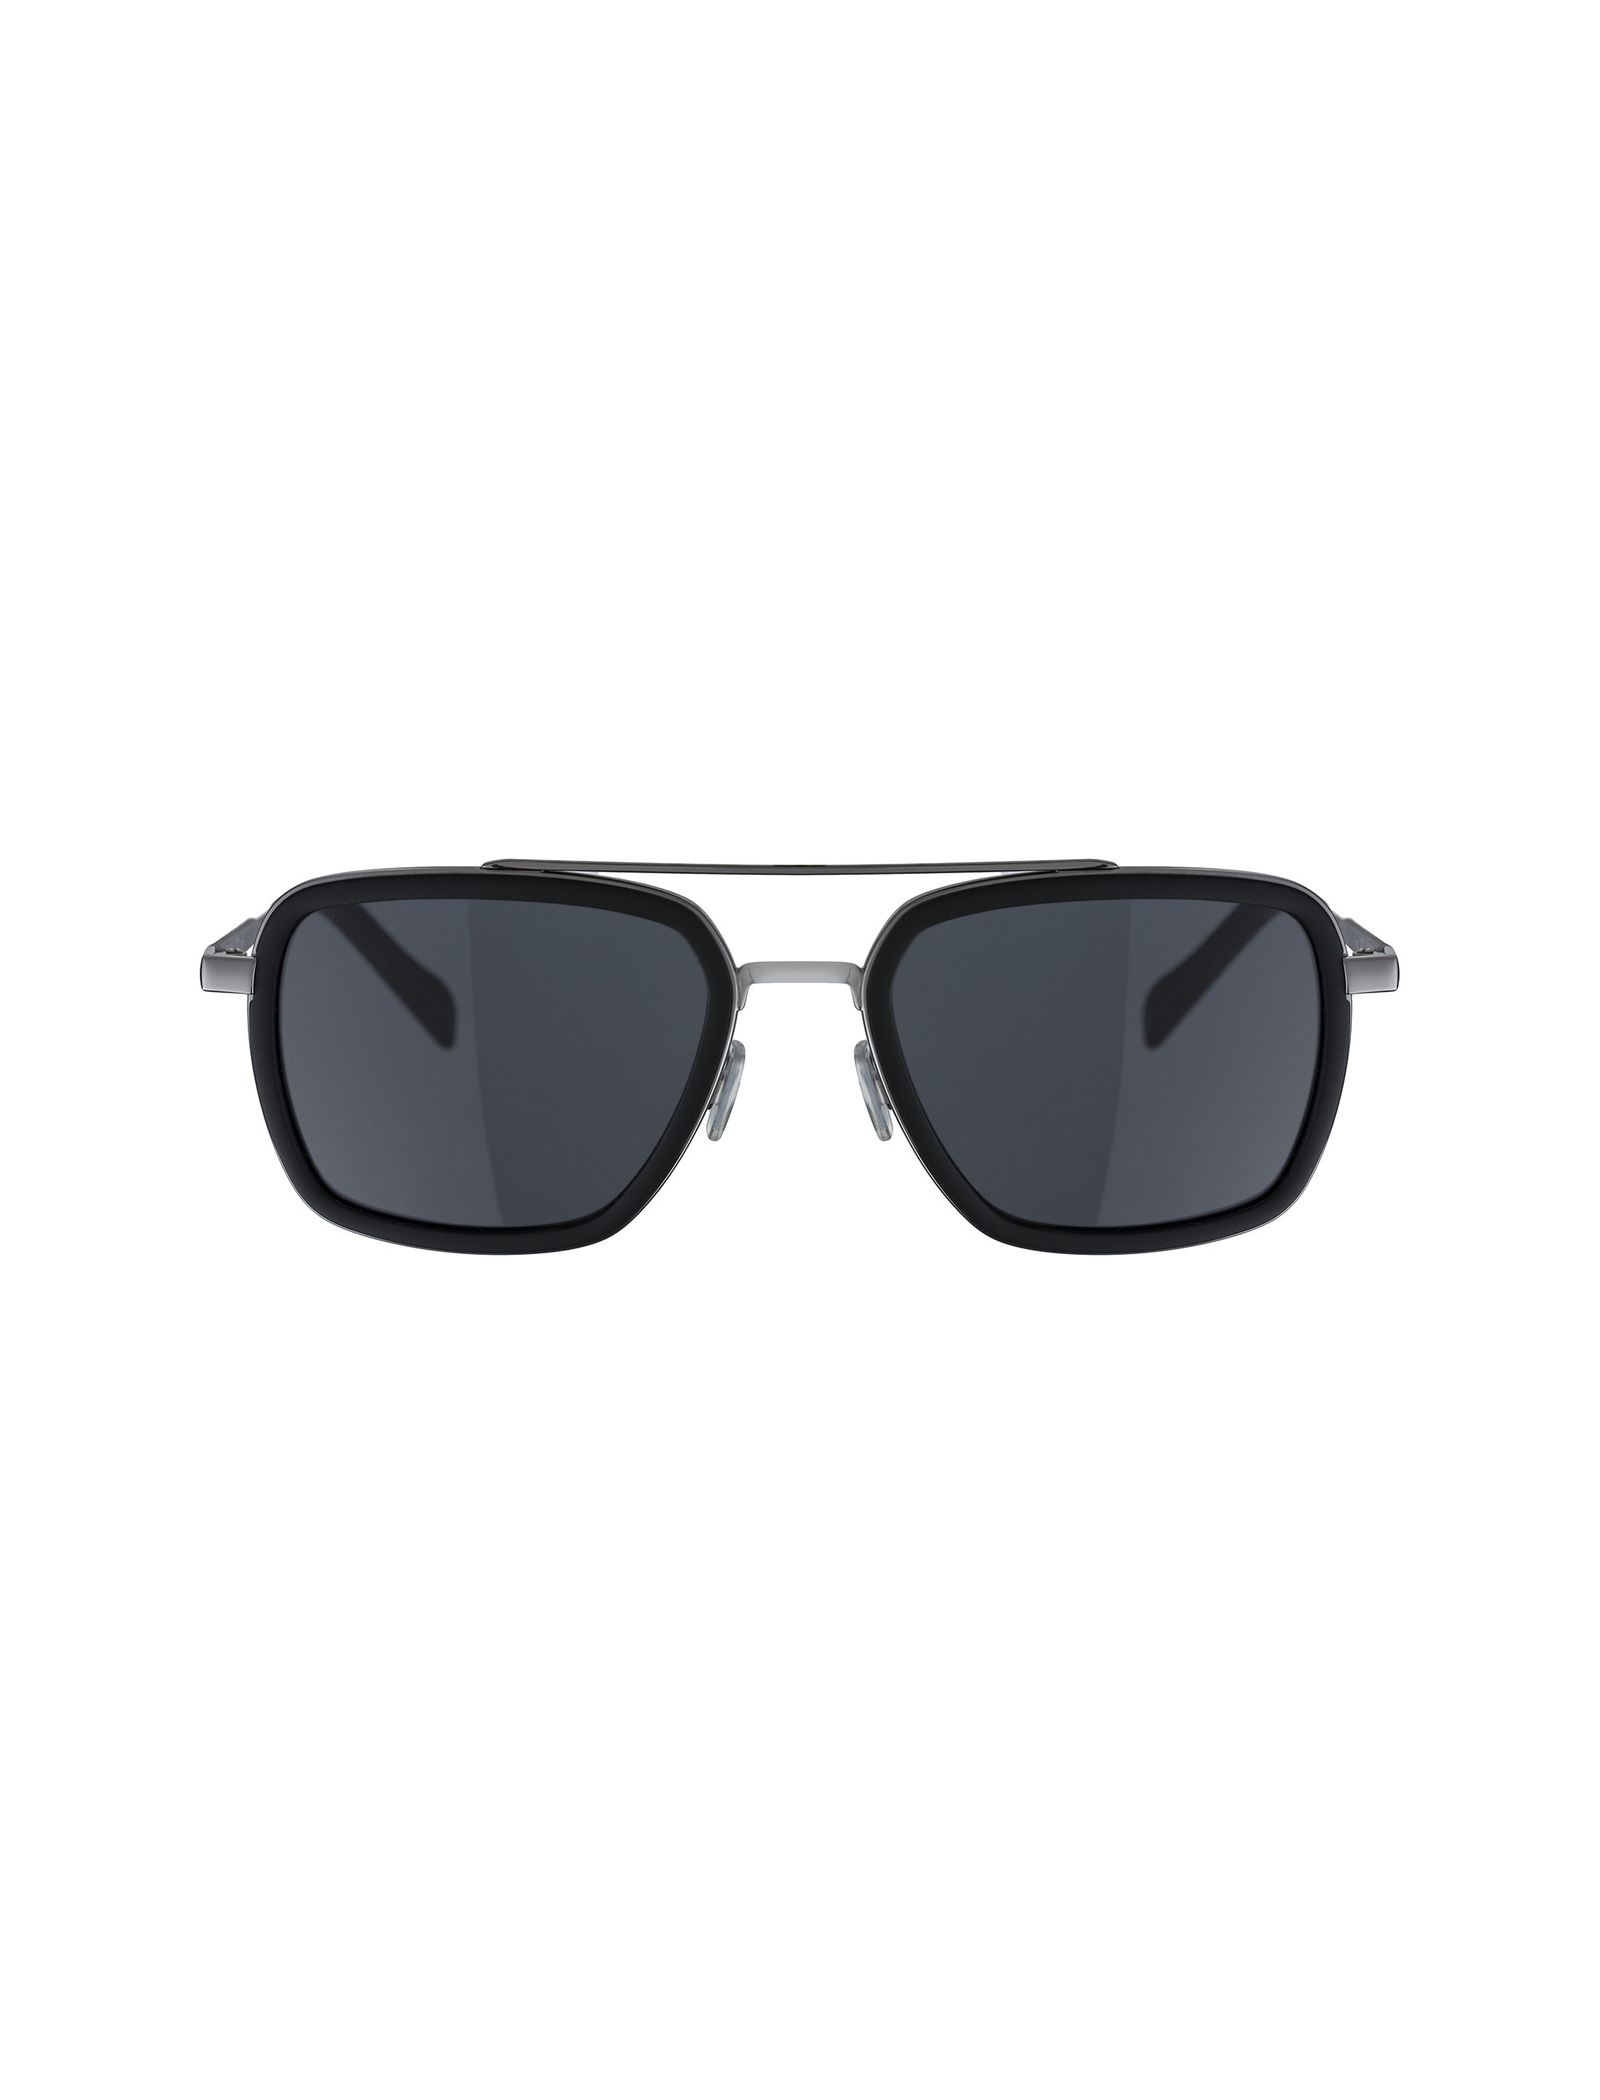 عینک آفتابی خلبانی مردانه - باس اورنج - مشکي  - 2